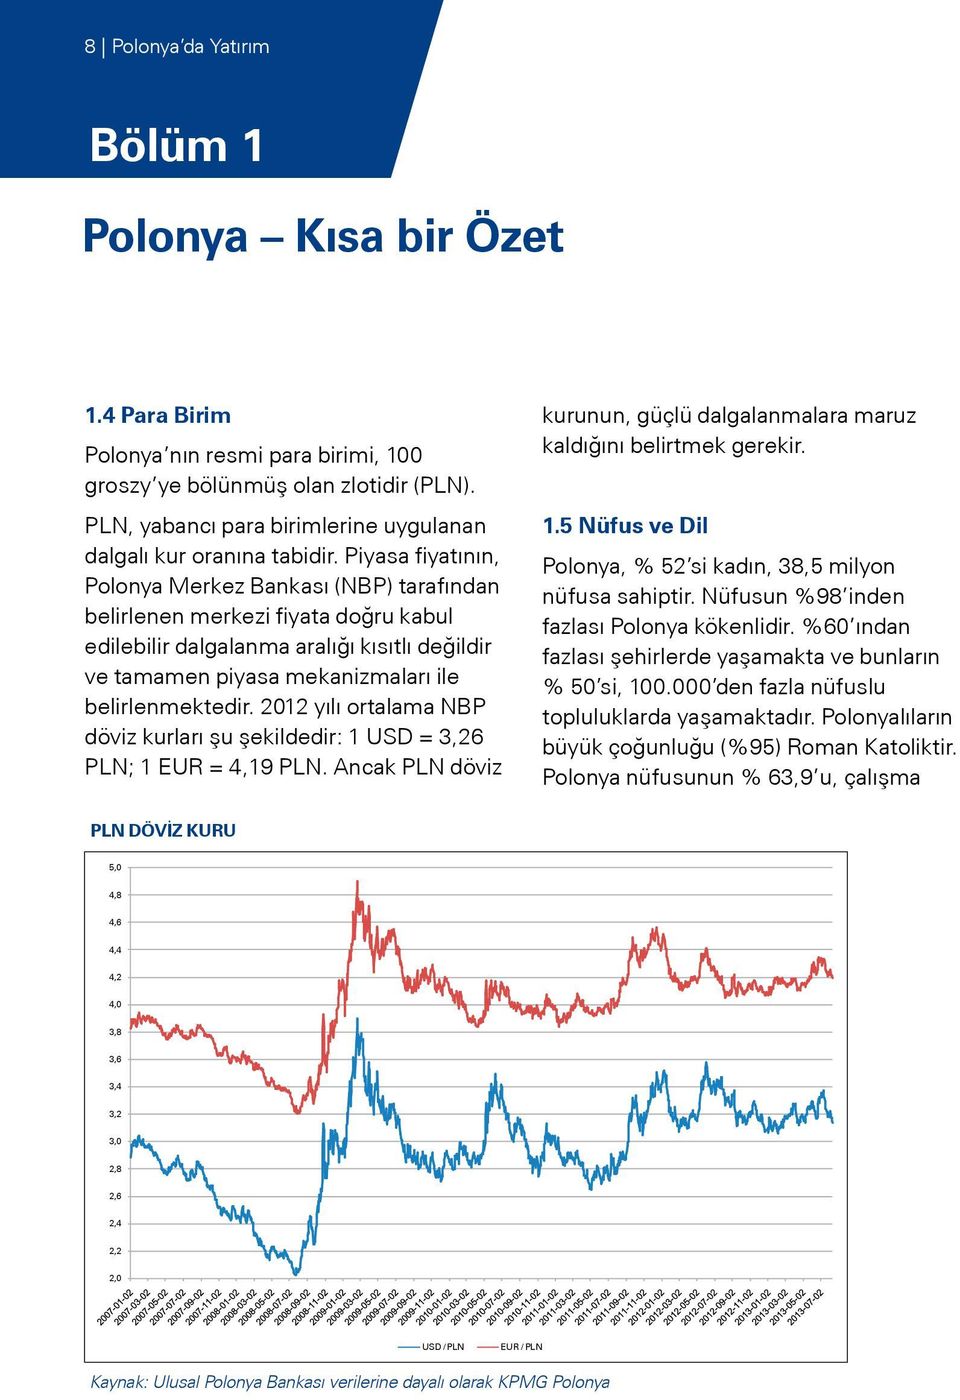 Piyasa fiyatının, Polonya Merkez Bankası (NBP) tarafından belirlenen merkezi fiyata doğru kabul edilebilir dalgalanma aralığı kısıtlı değildir ve tamamen piyasa mekanizmaları ile belirlenmektedir.